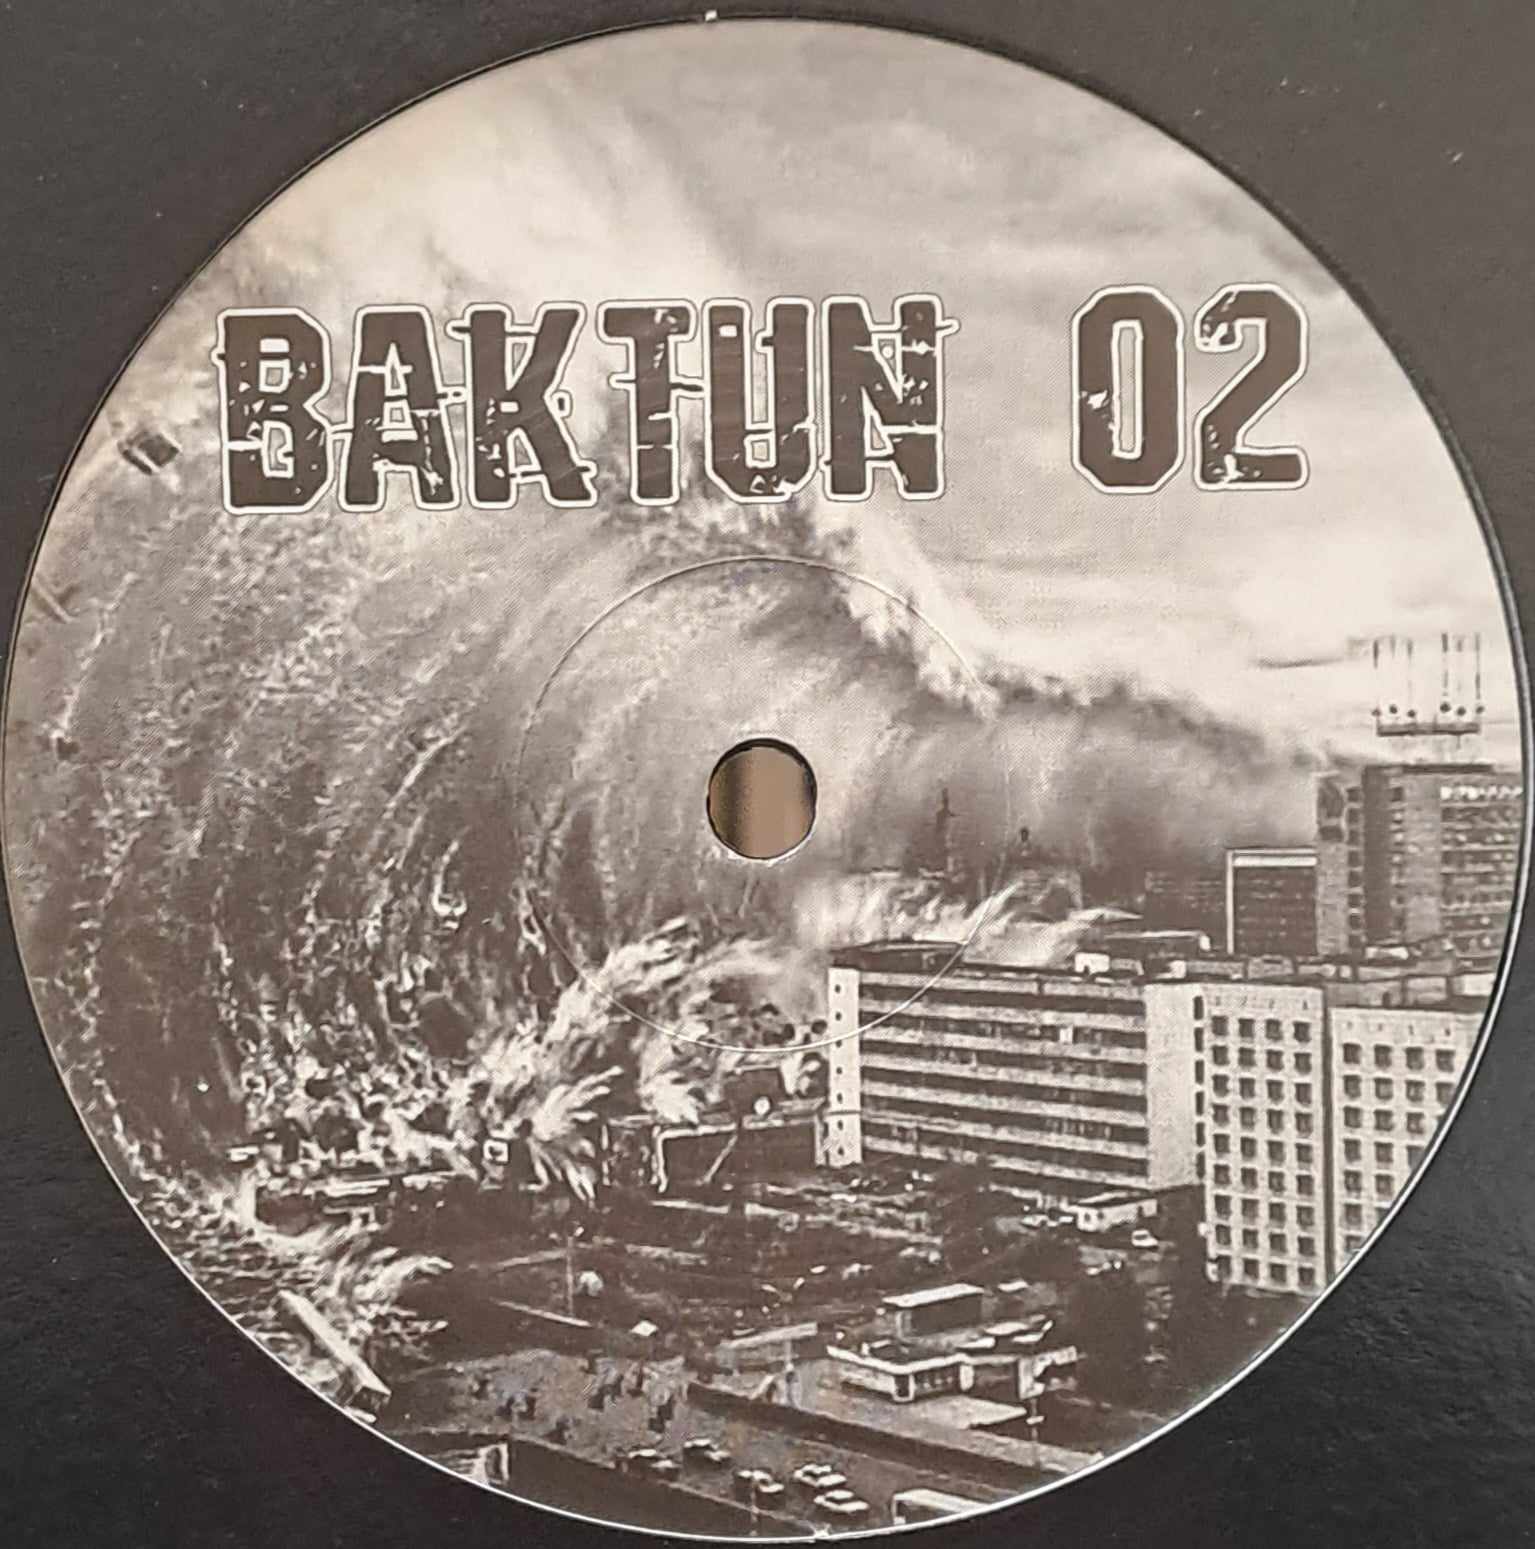 Baktun 02 - vinyle frenchcore